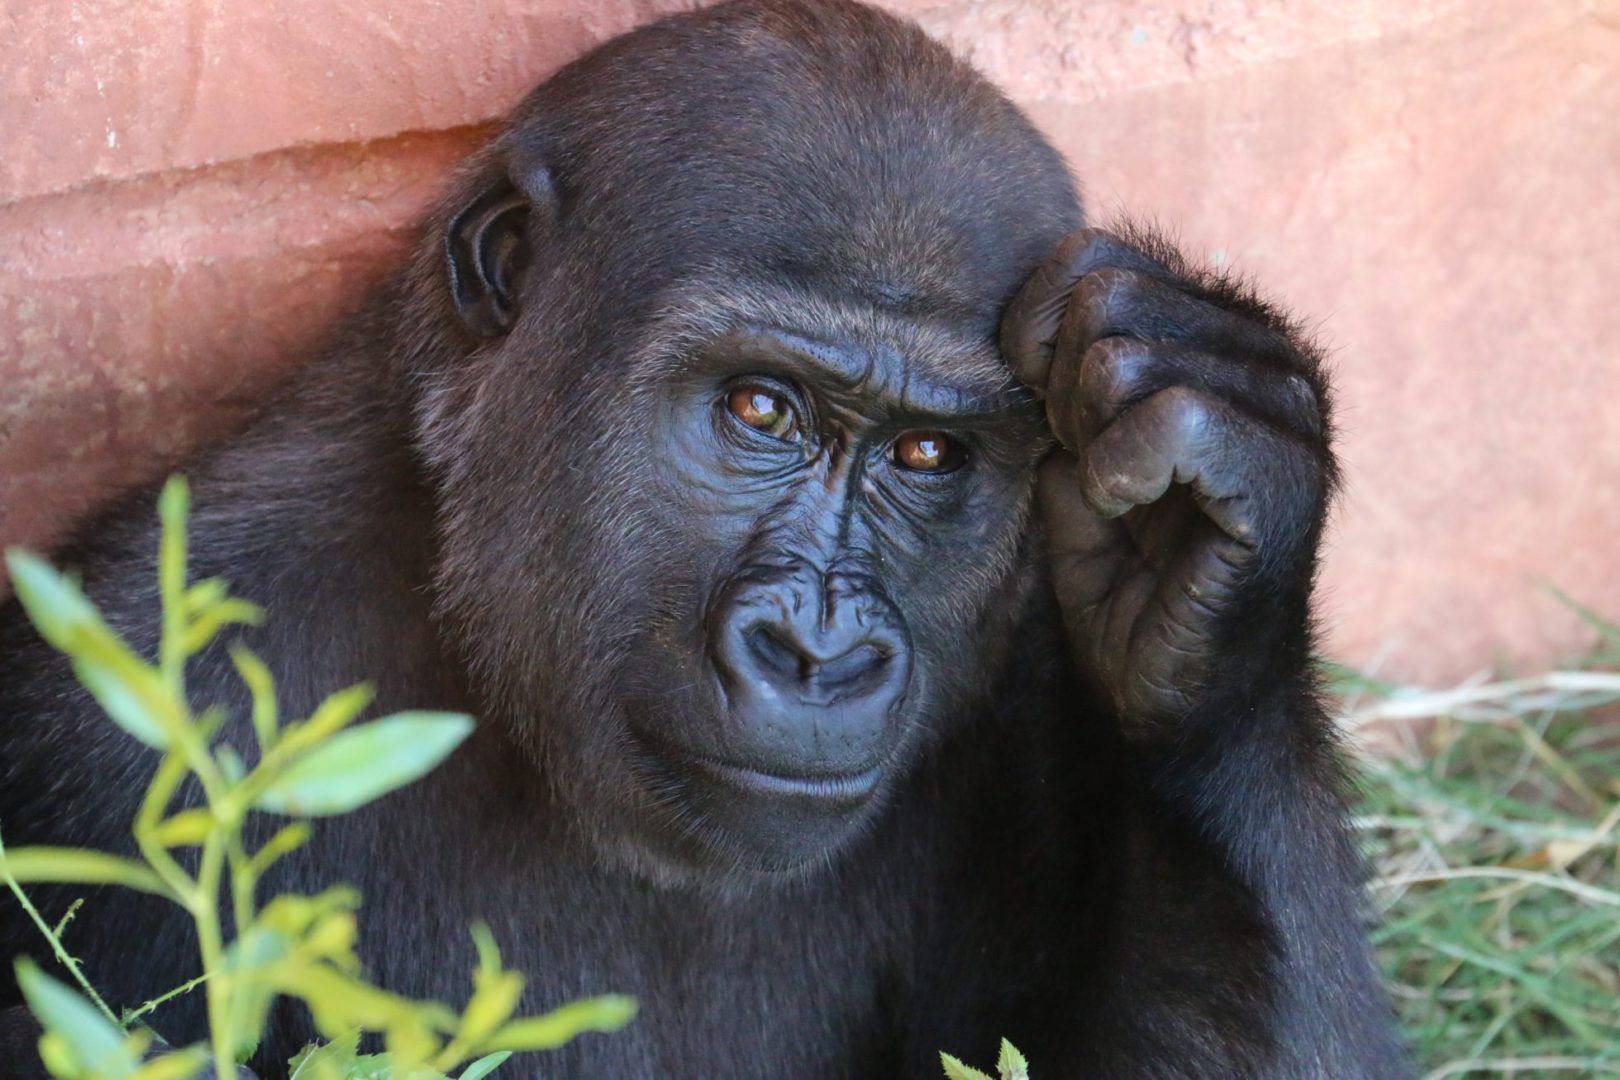 A photograph of a Gorilla